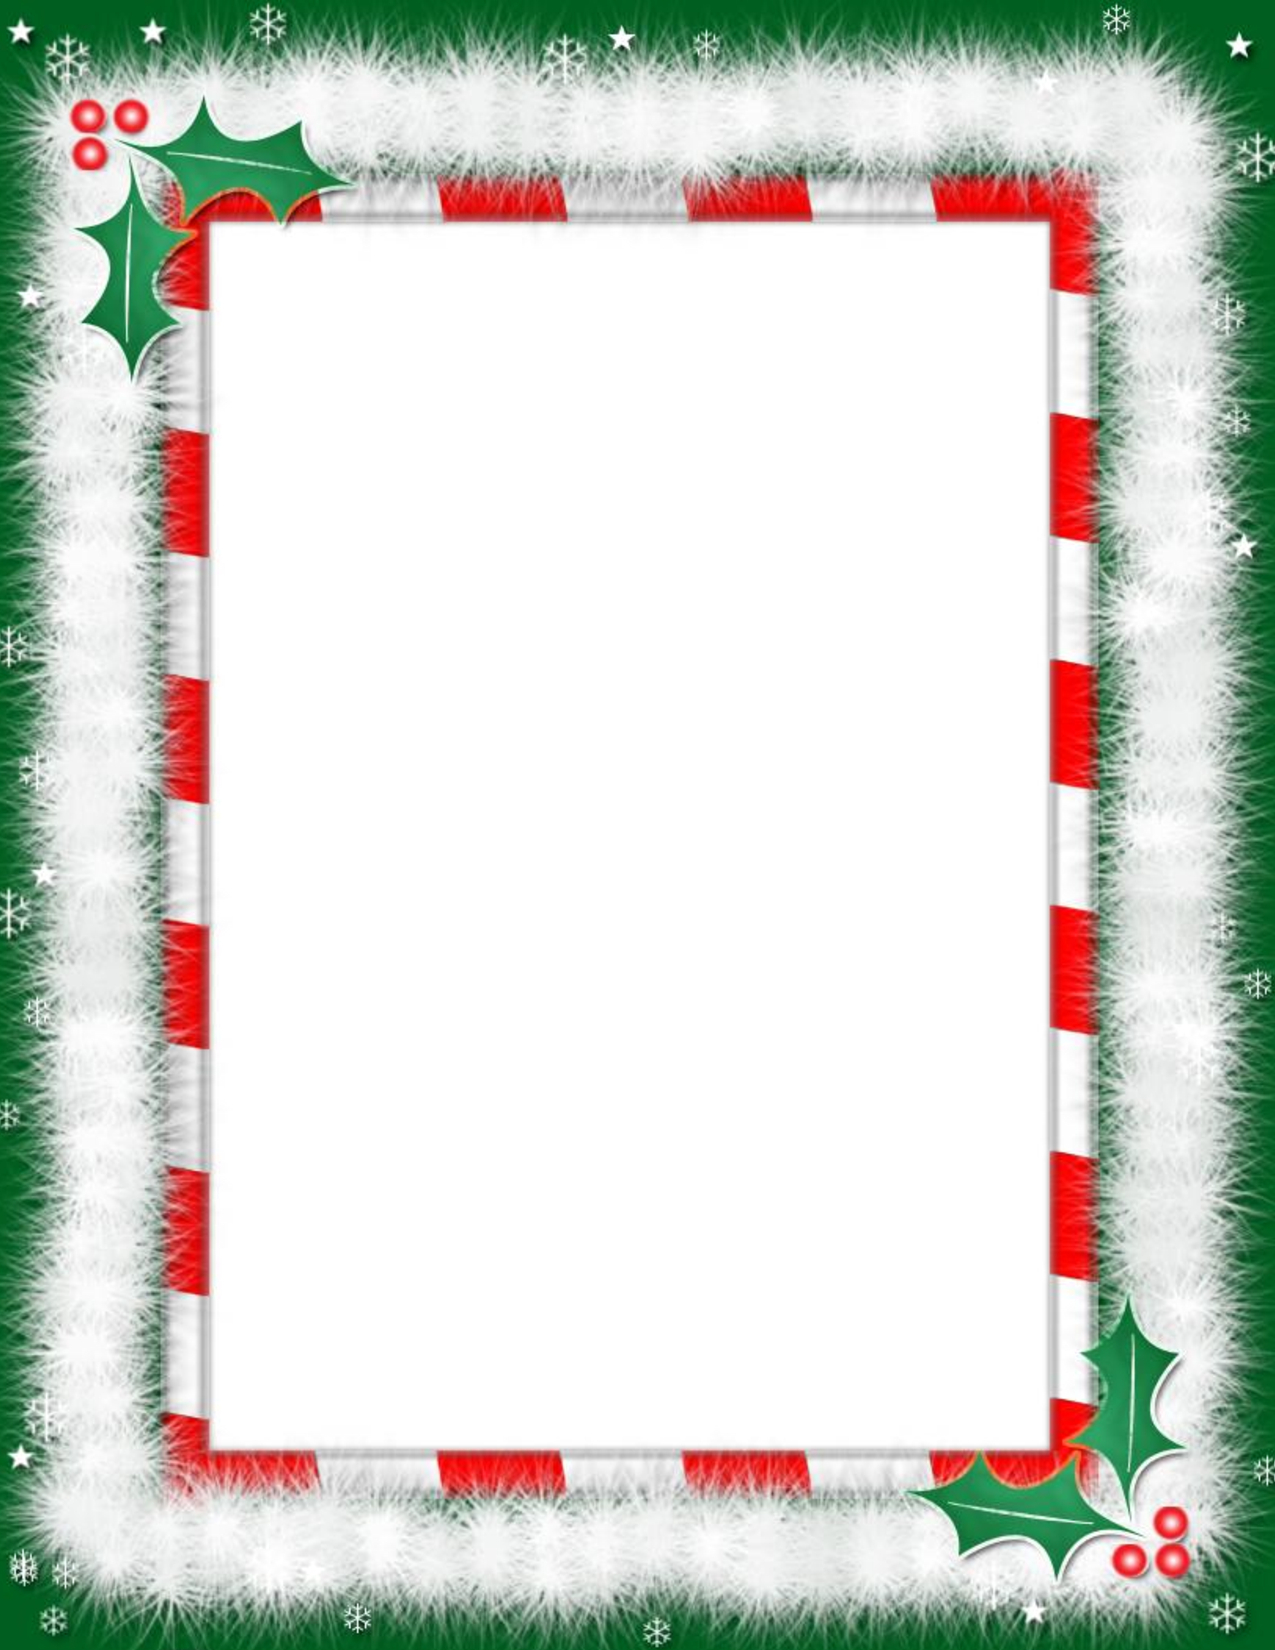 Free Printable Christmas Paper With Borders Free Printable